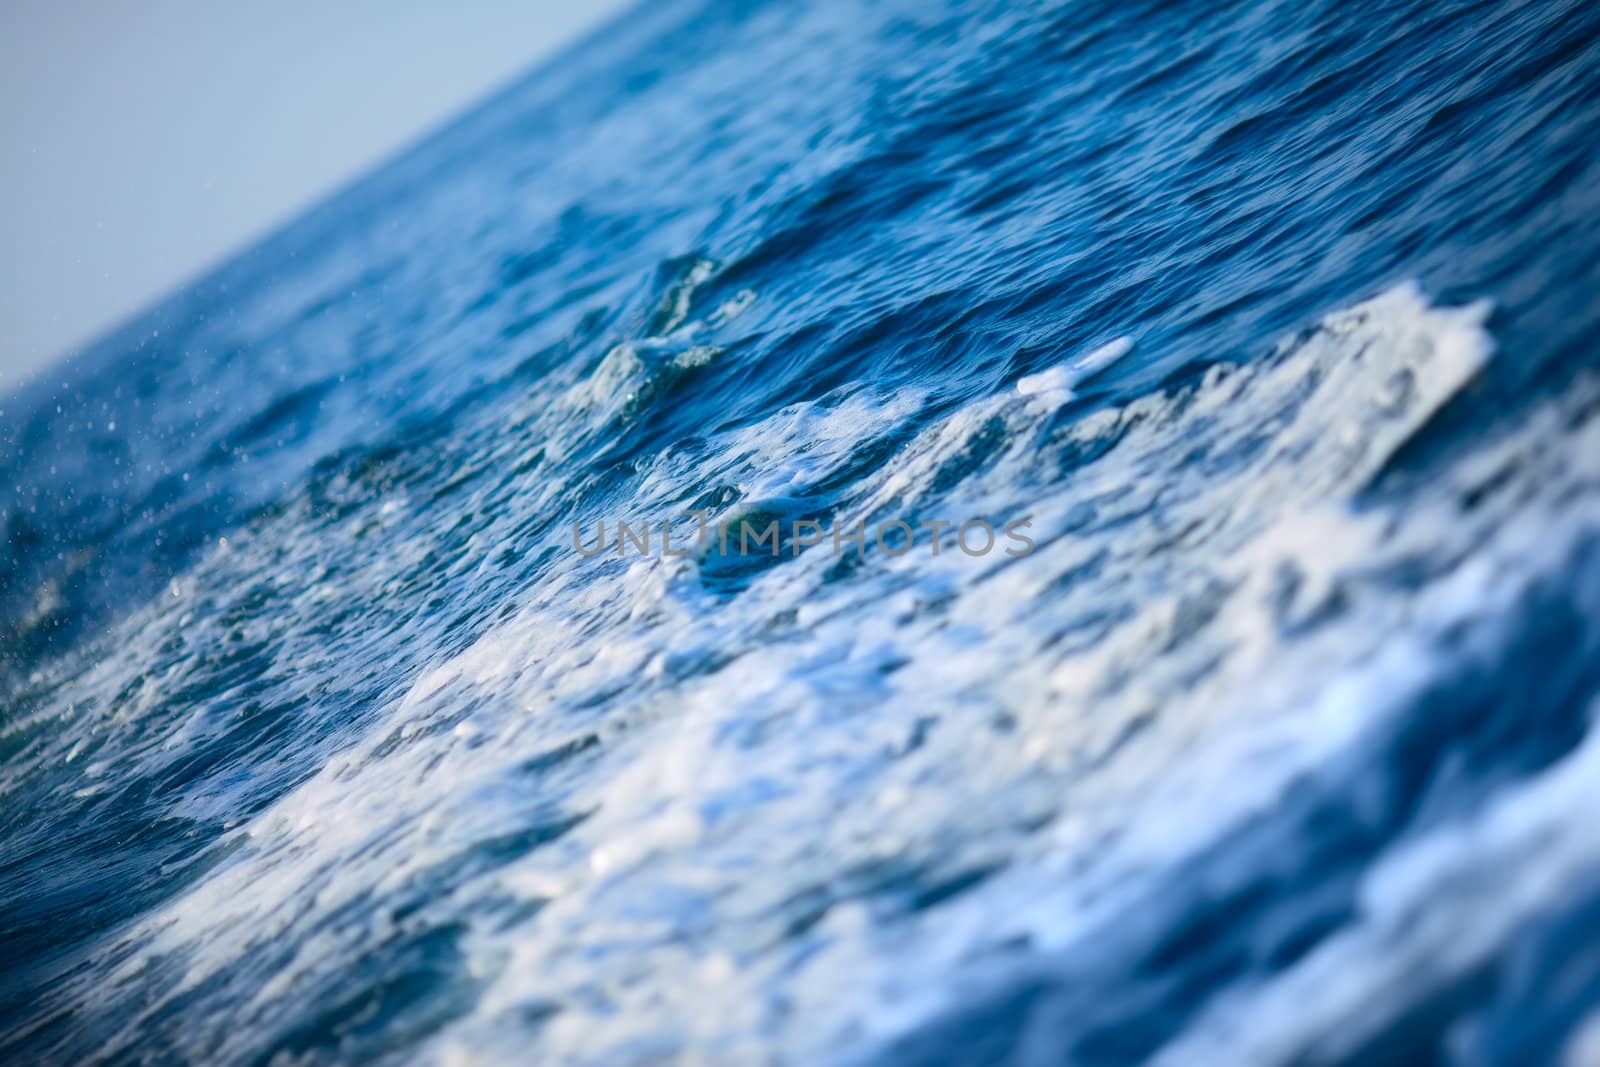 Blue Ocean Wave by petr_malyshev